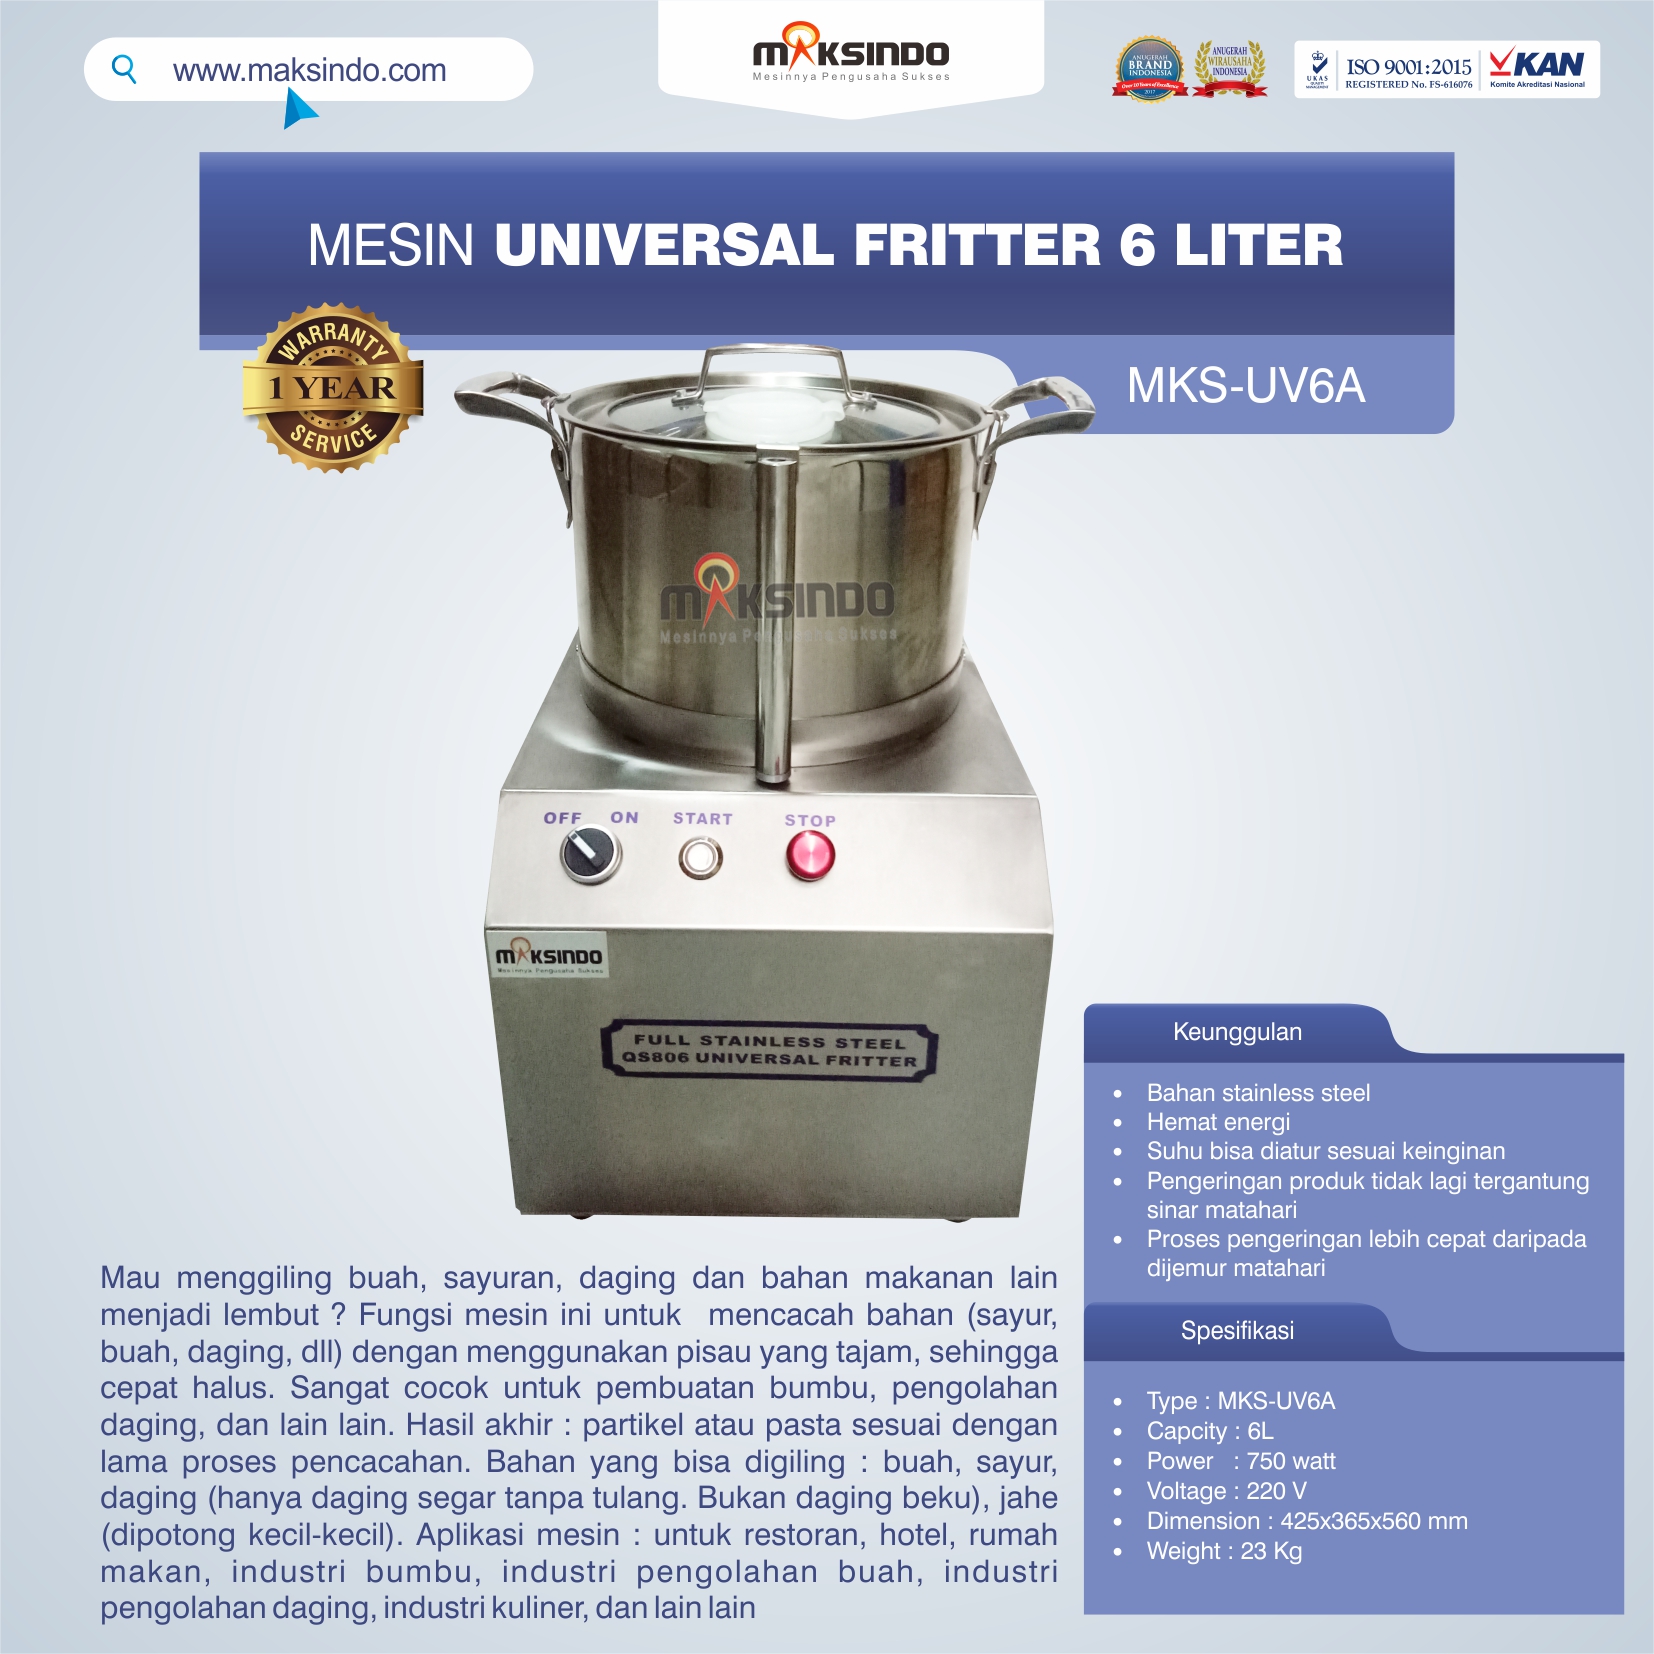 Jual Universal Fritter 6 Liter (MKS-UV6A) di Pekanbaru